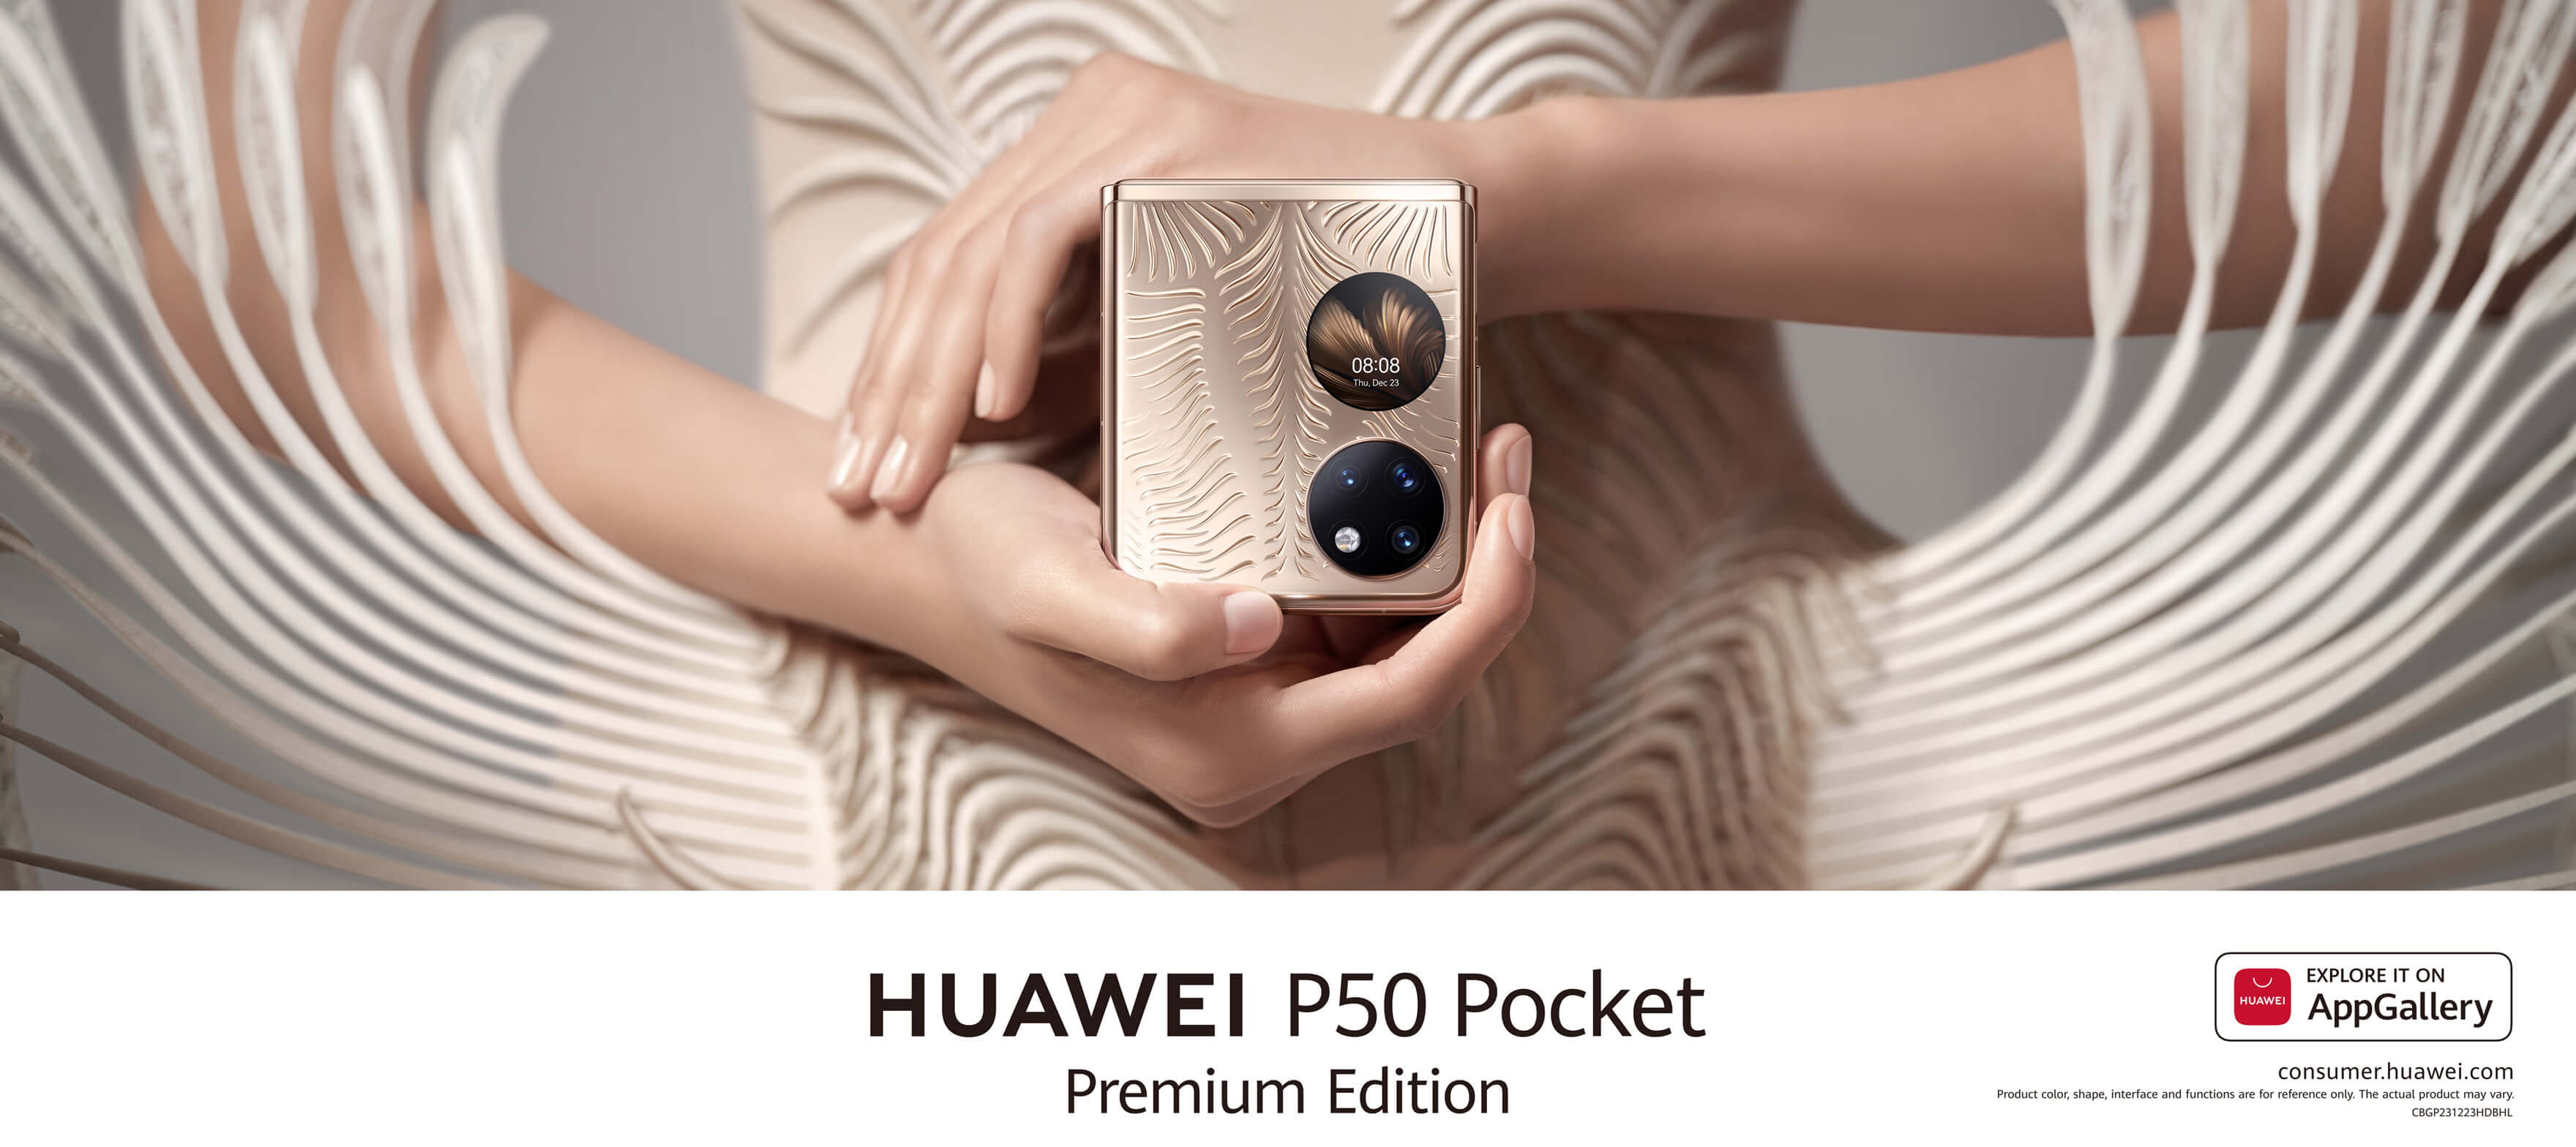 HUAWEI P50 Pocket KV Part 1